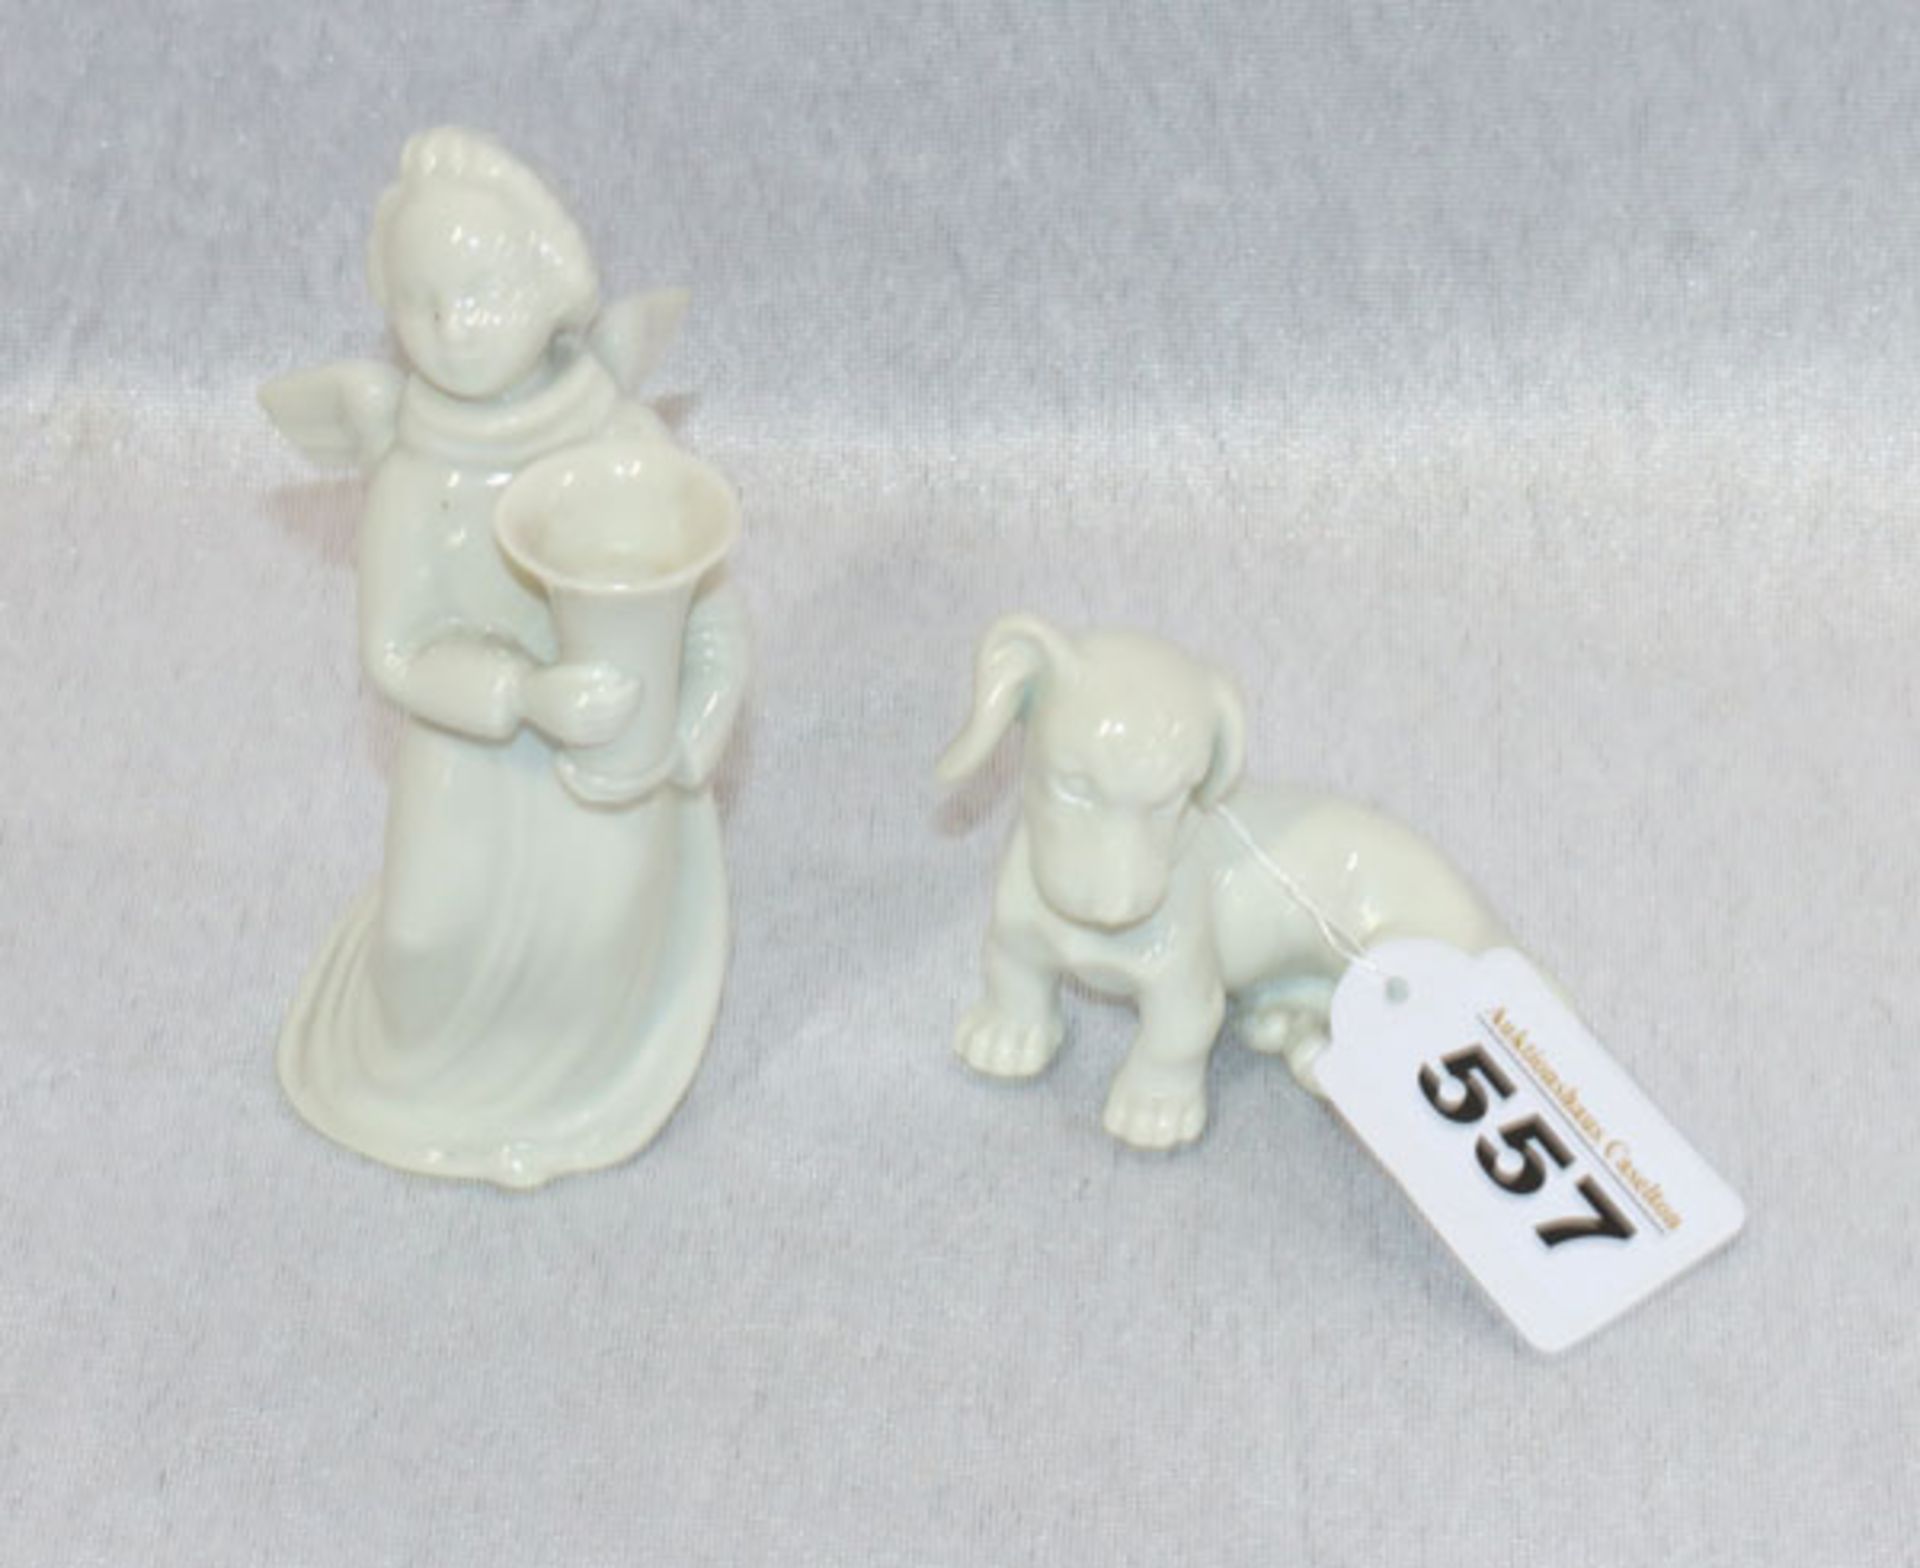 Porzellan Tierfigur 'Hund', H 6 cm, Wien ? und 'Leuchterengel', H 12 cm, beide weiß glasiert